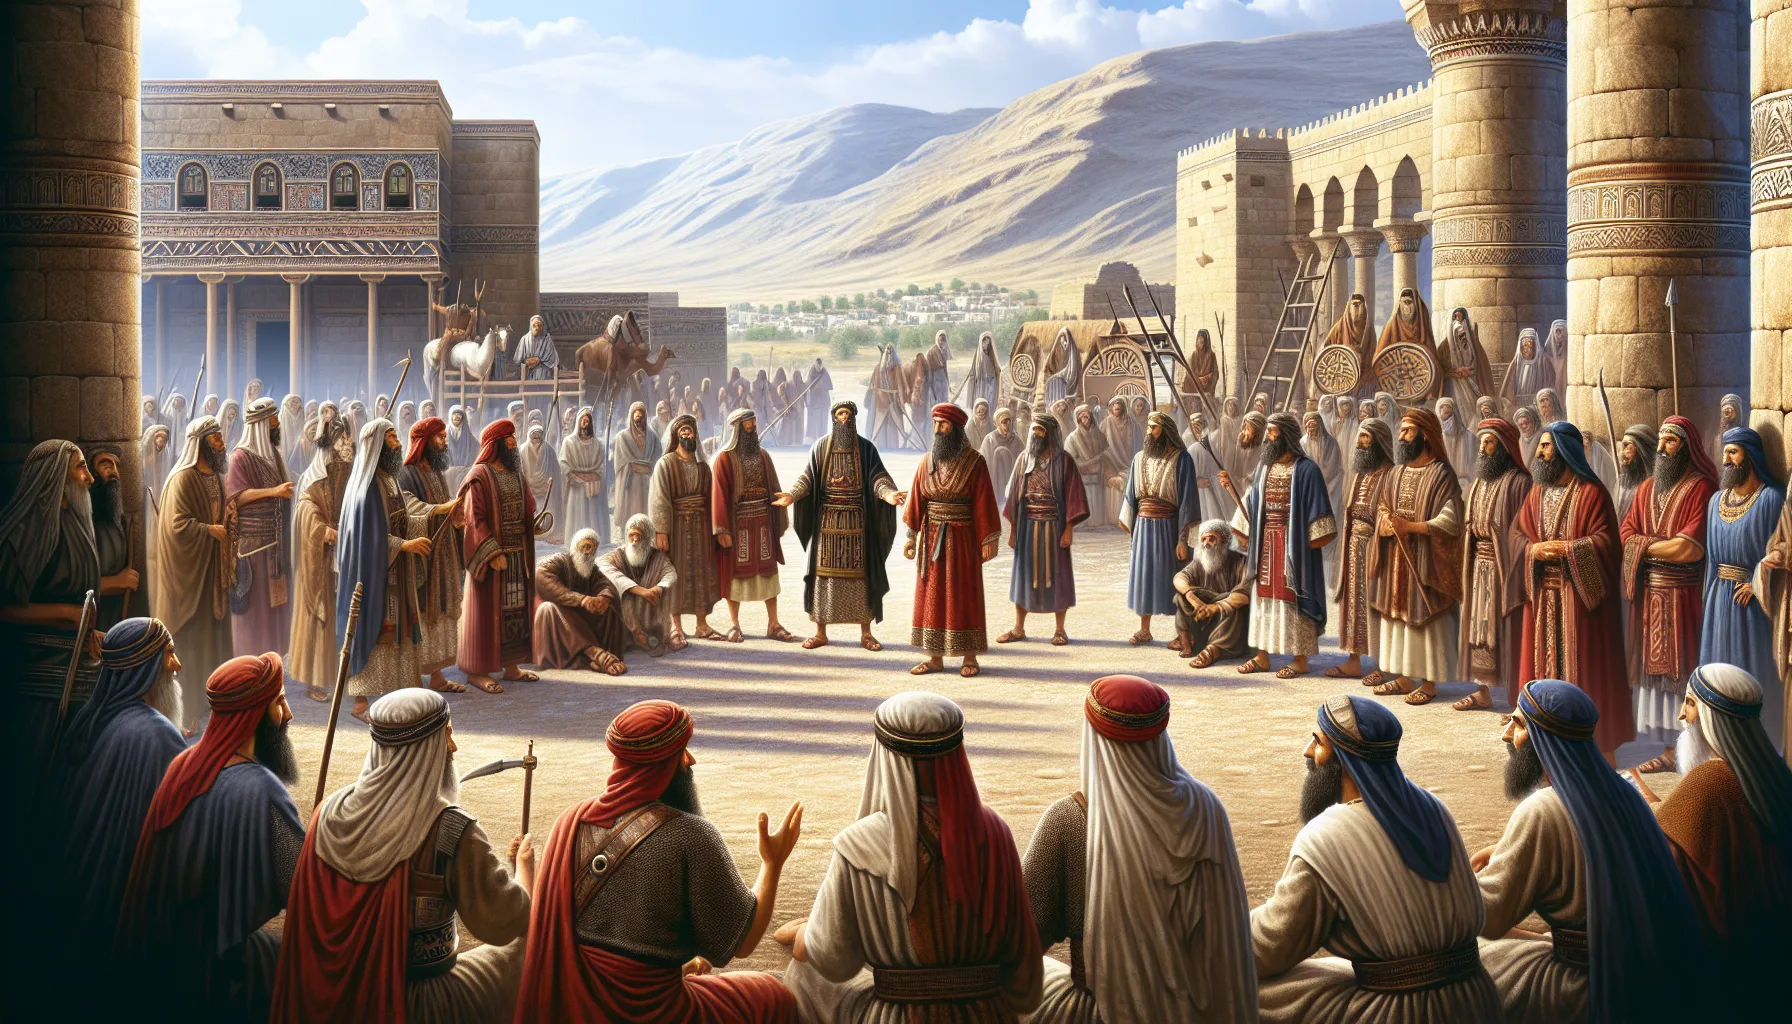 Imagen ilustrativa representando la historia bíblica de los amonitas y su interacción con Israel.